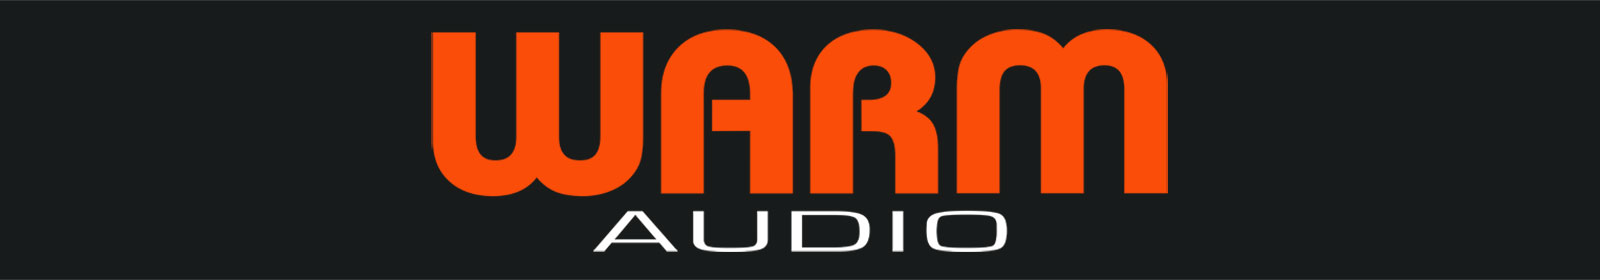 Warm Audio Logo Header Orange on Black Background